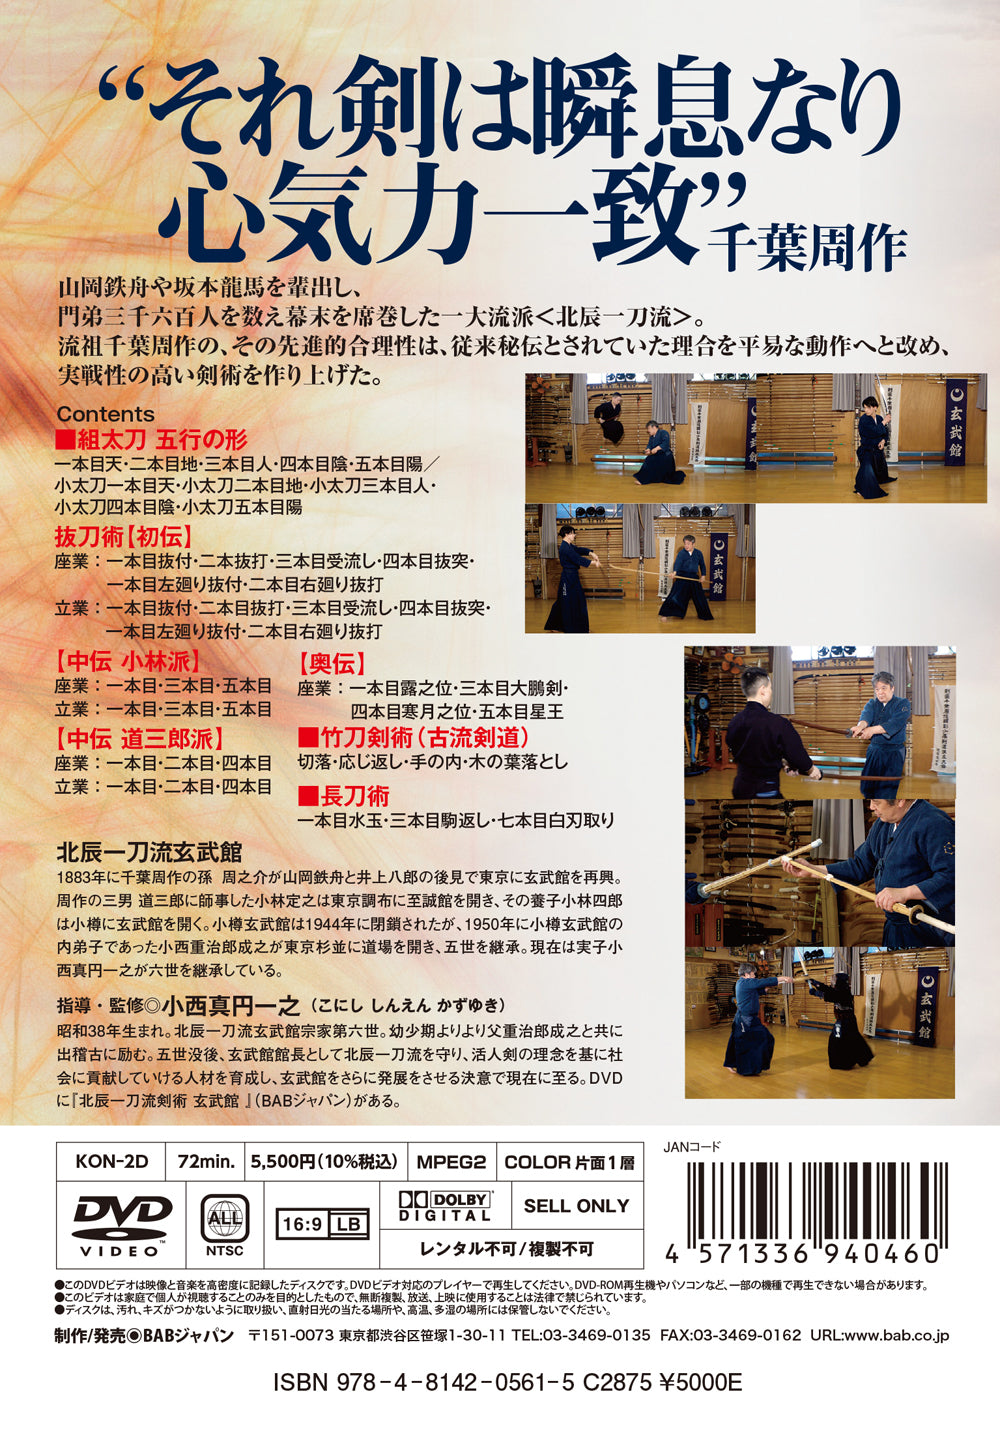 Hokushin Itto Ryu Kenjutsu Genbukan Vol 2 DVD de Shigejiro Konishi